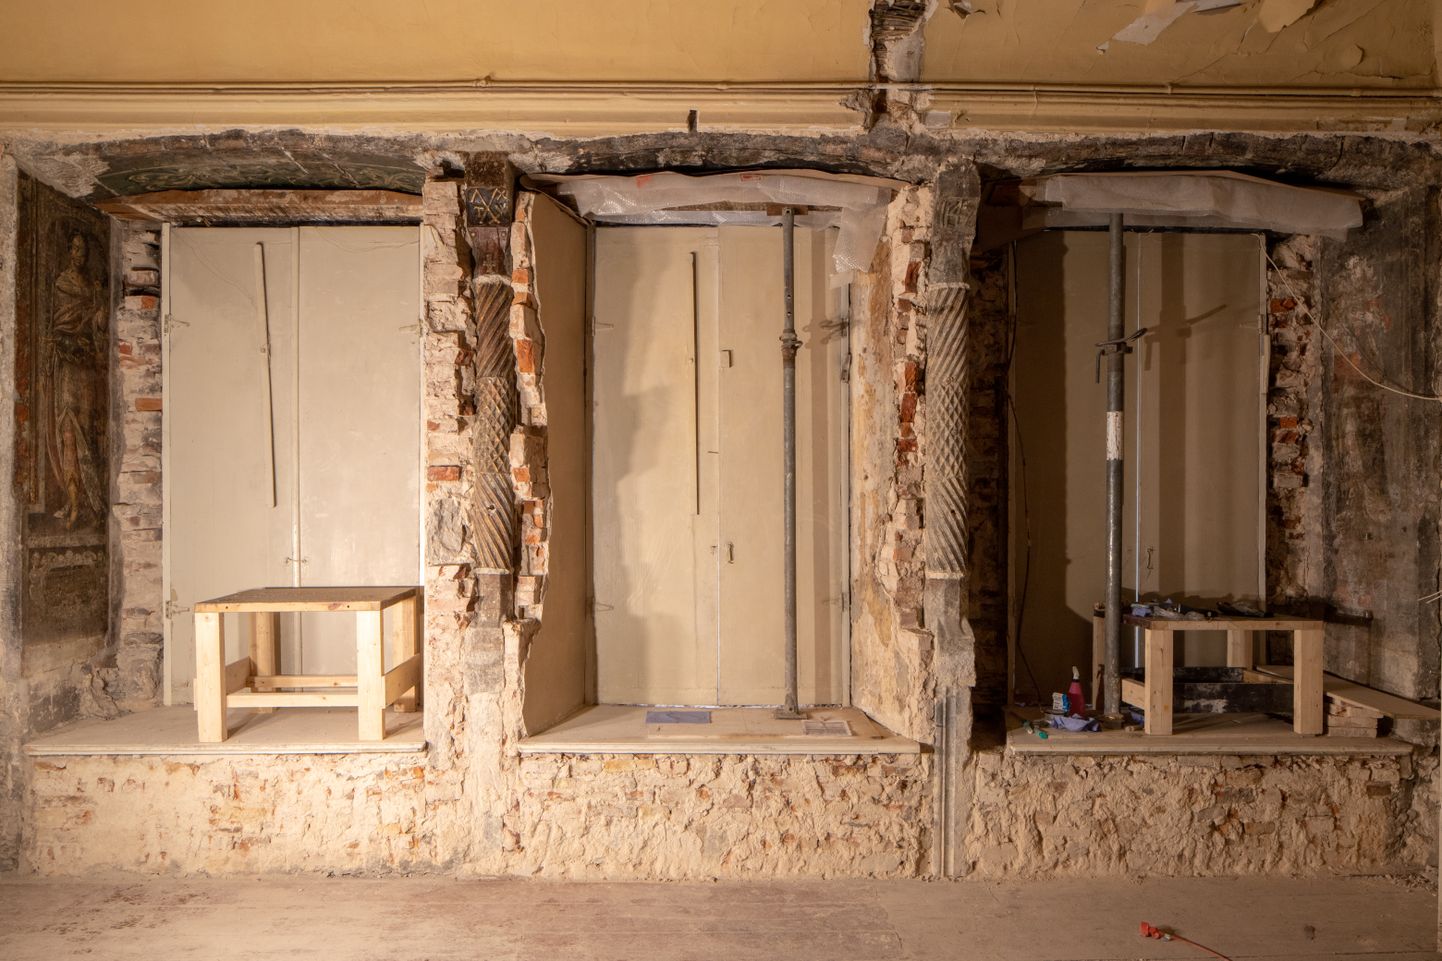 Lai 11 restaureerimistööde käigus tulid välja väärtuslikud interjööridetailid, mis olid kinni müüritud.